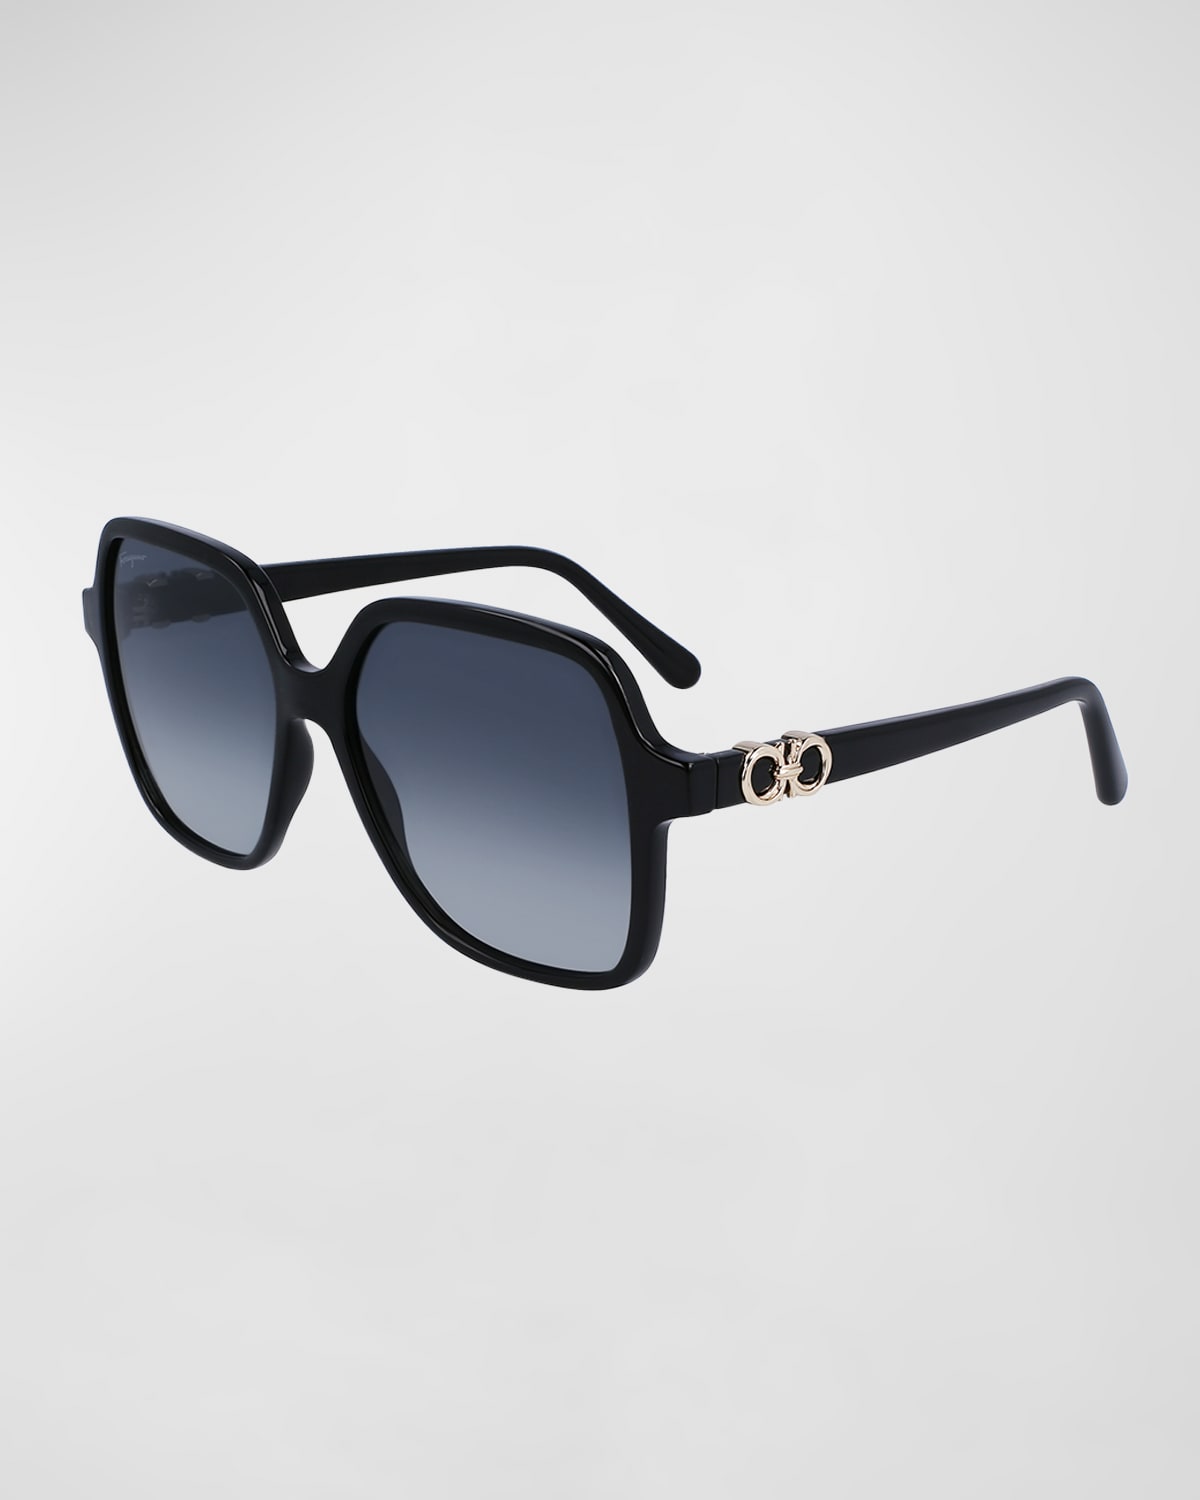 Ferragamo Gancini Classic Square Acetate Sunglasses In Black/blue Gradient